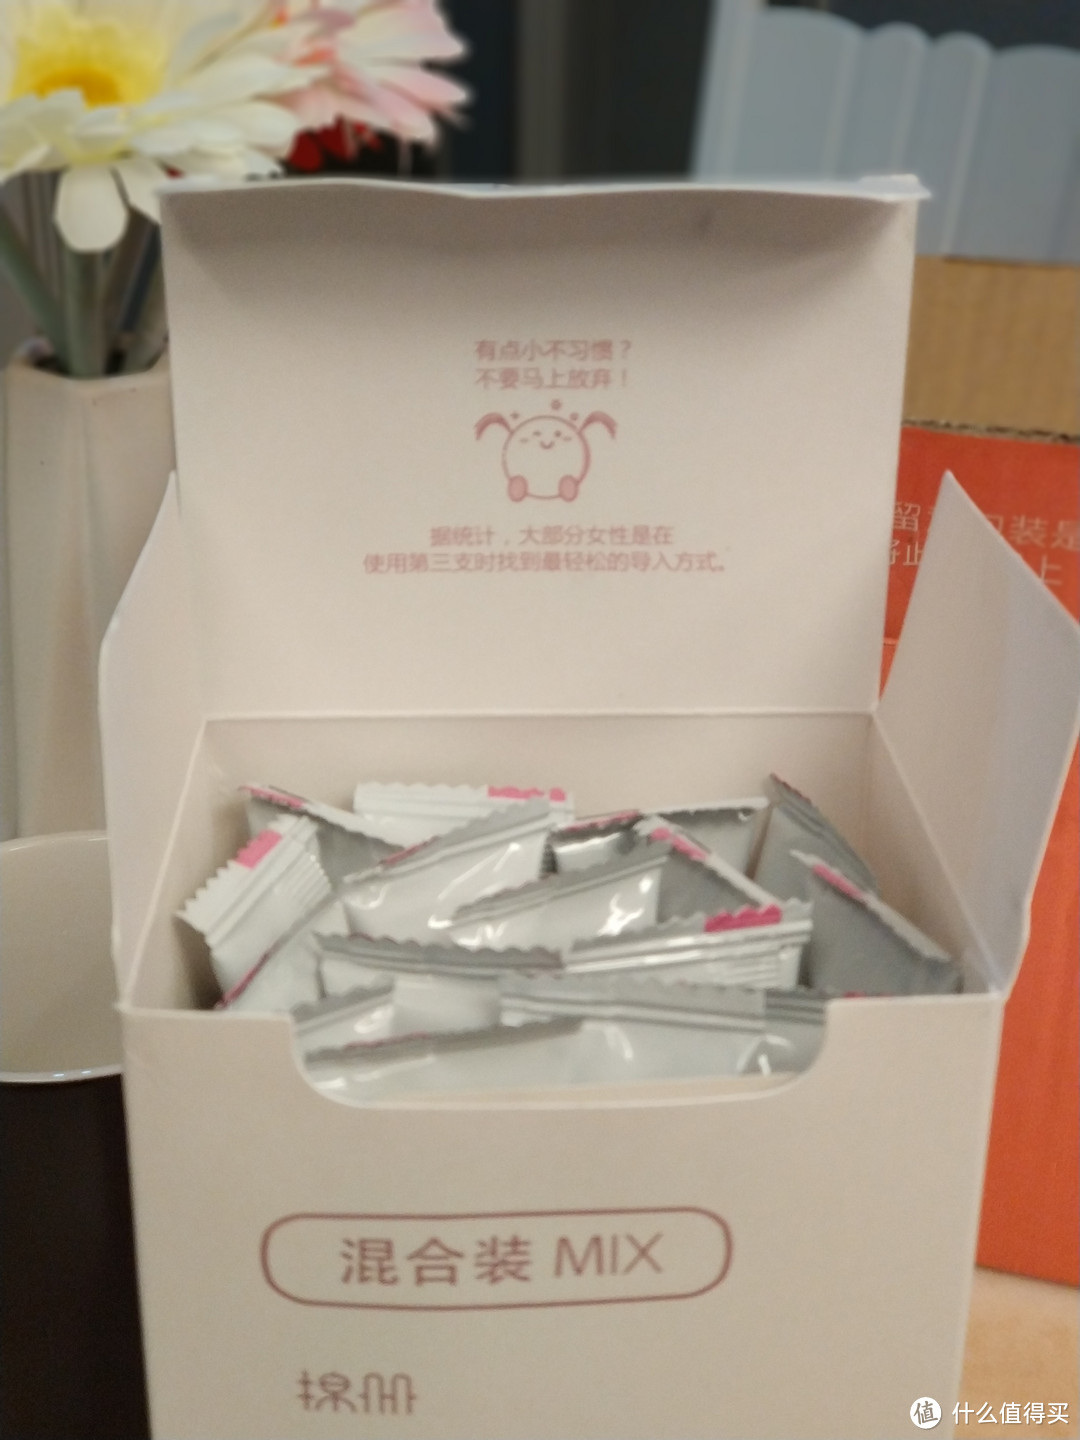 【轻众测】棉册混合装MIX简单开箱——来自直男的卫生棉条评测